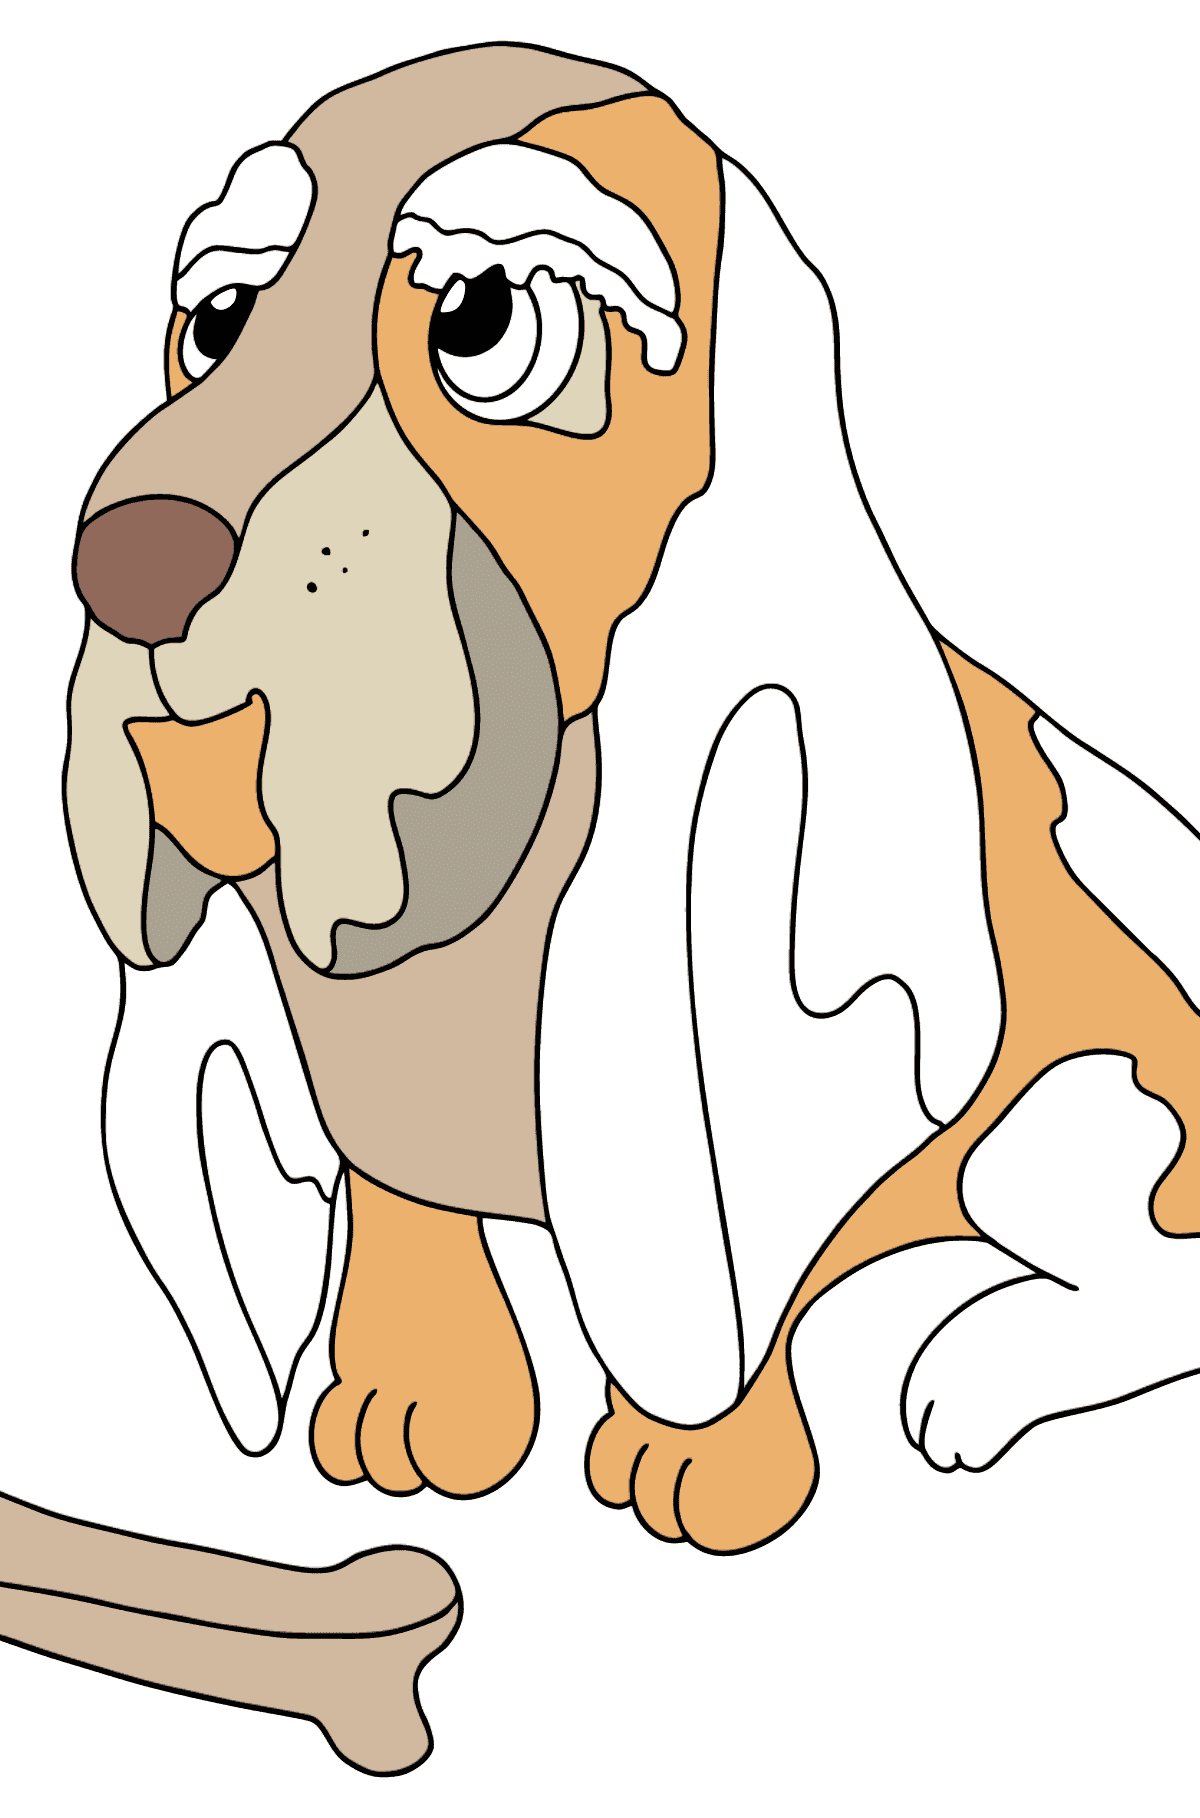 Dibujo para Colorear - Un Perro Sentado Cerca de un Hueso - Dibujos para Colorear para Niños